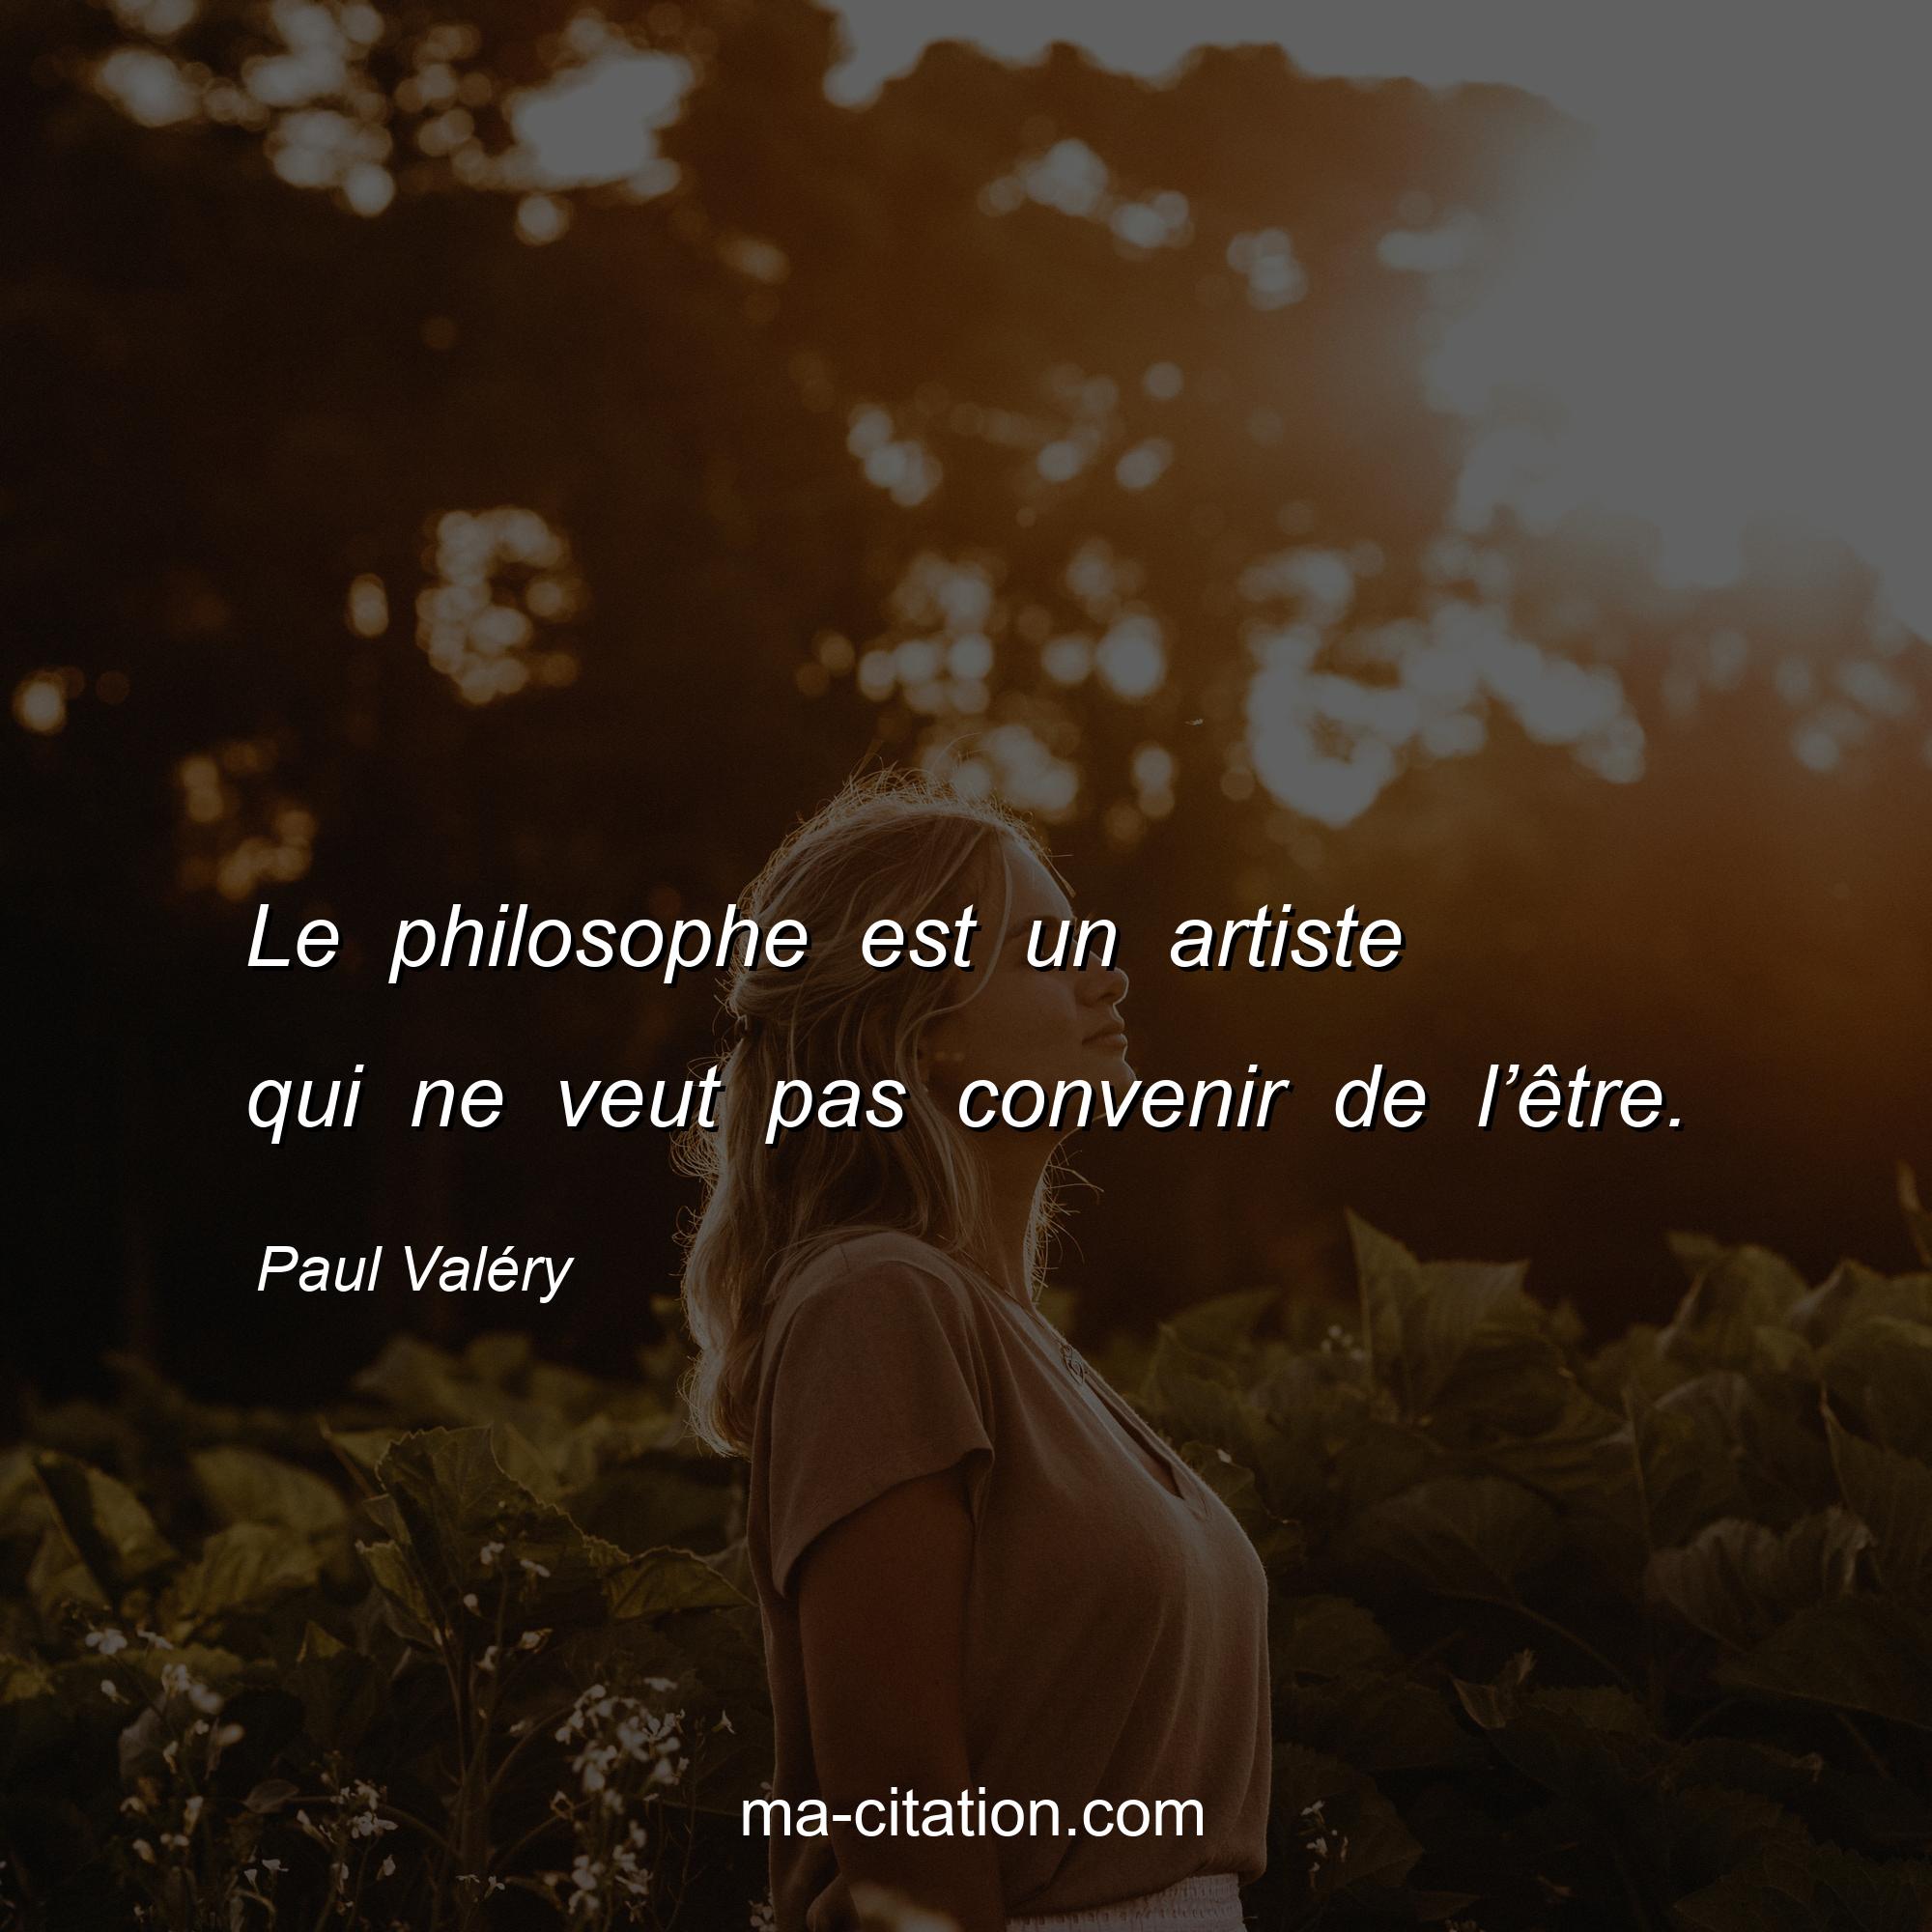 Paul Valéry : Le philosophe est un artiste qui ne veut pas convenir de l’être.